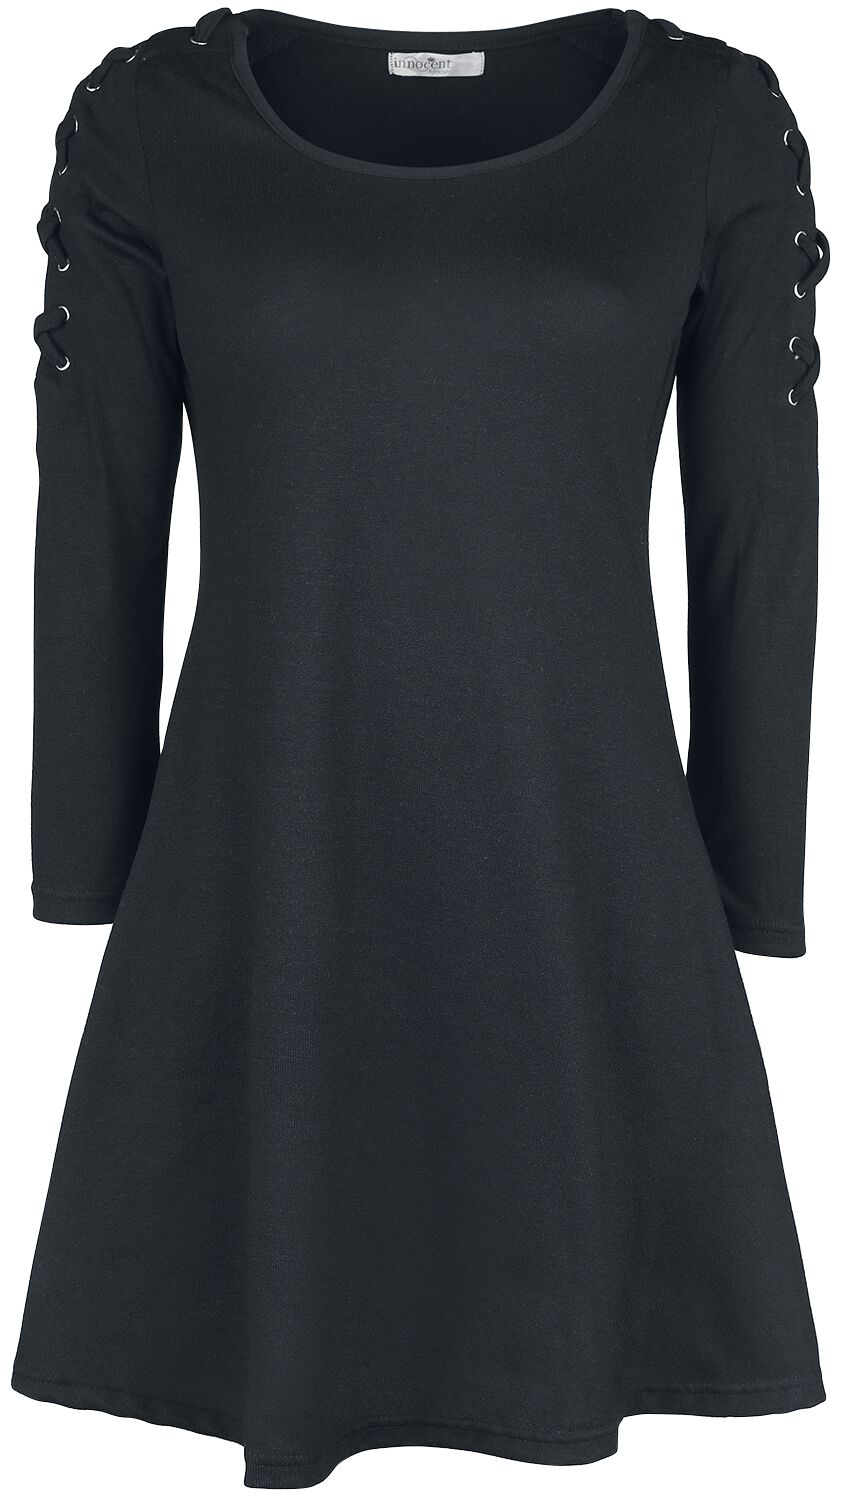 Innocent Kurzes Kleid - Collette Dress - S bis 4XL - für Damen - Größe 3XL - schwarz